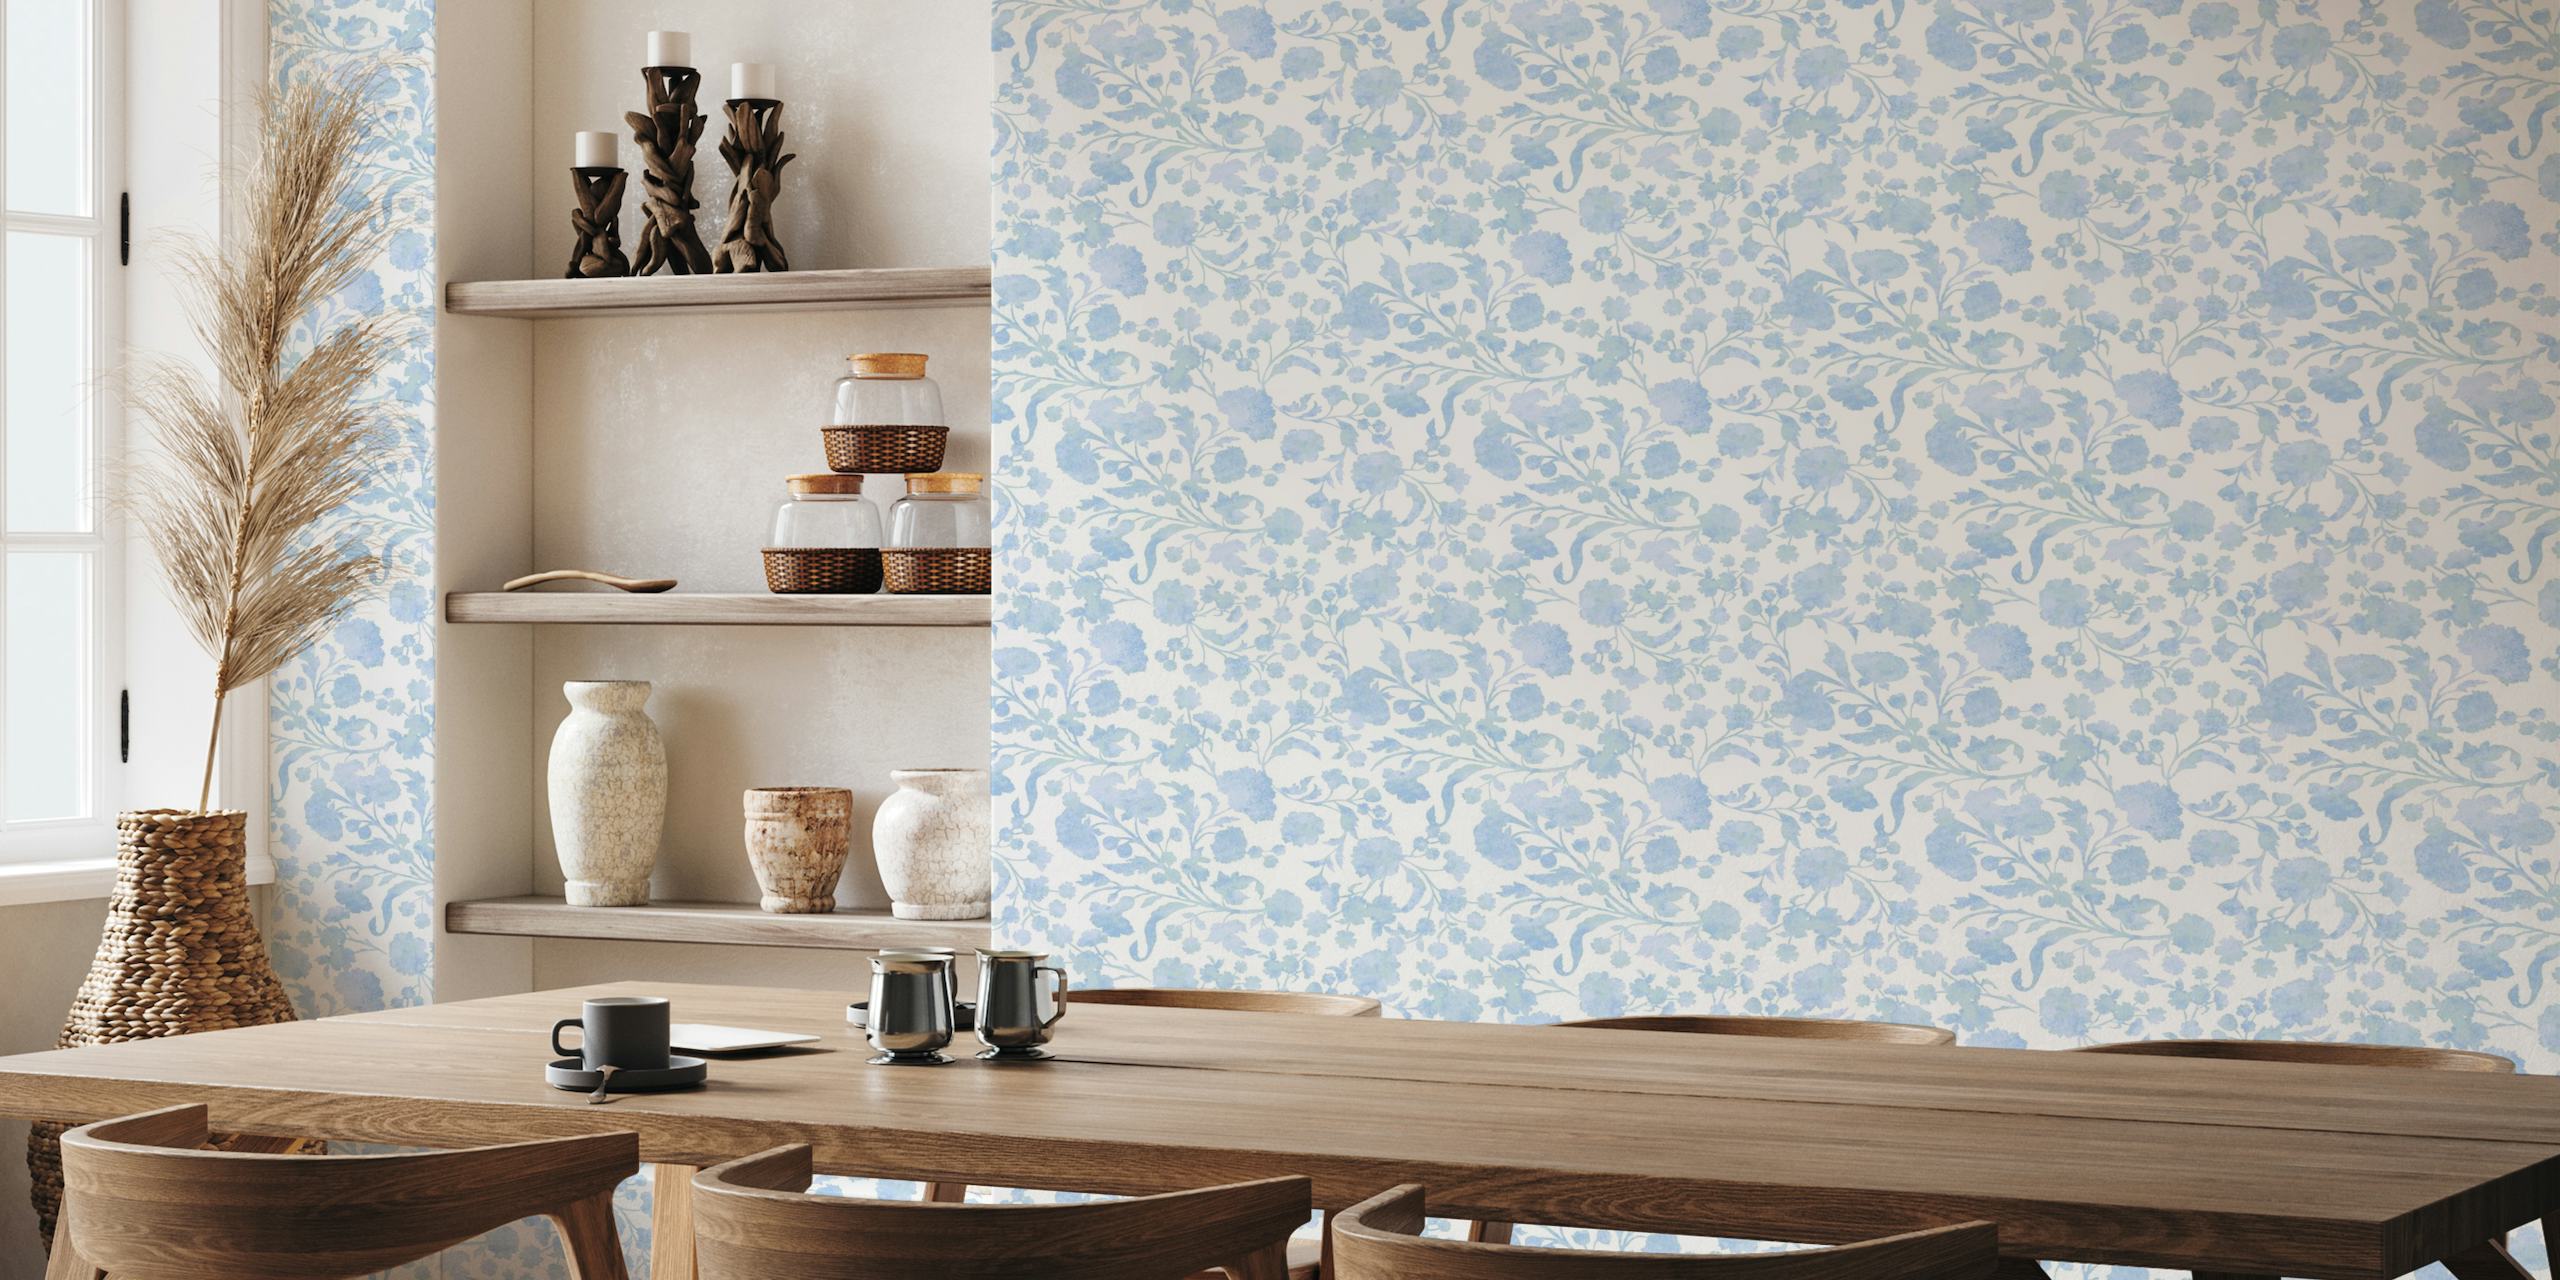 Textured ocean blue floral wallpaper